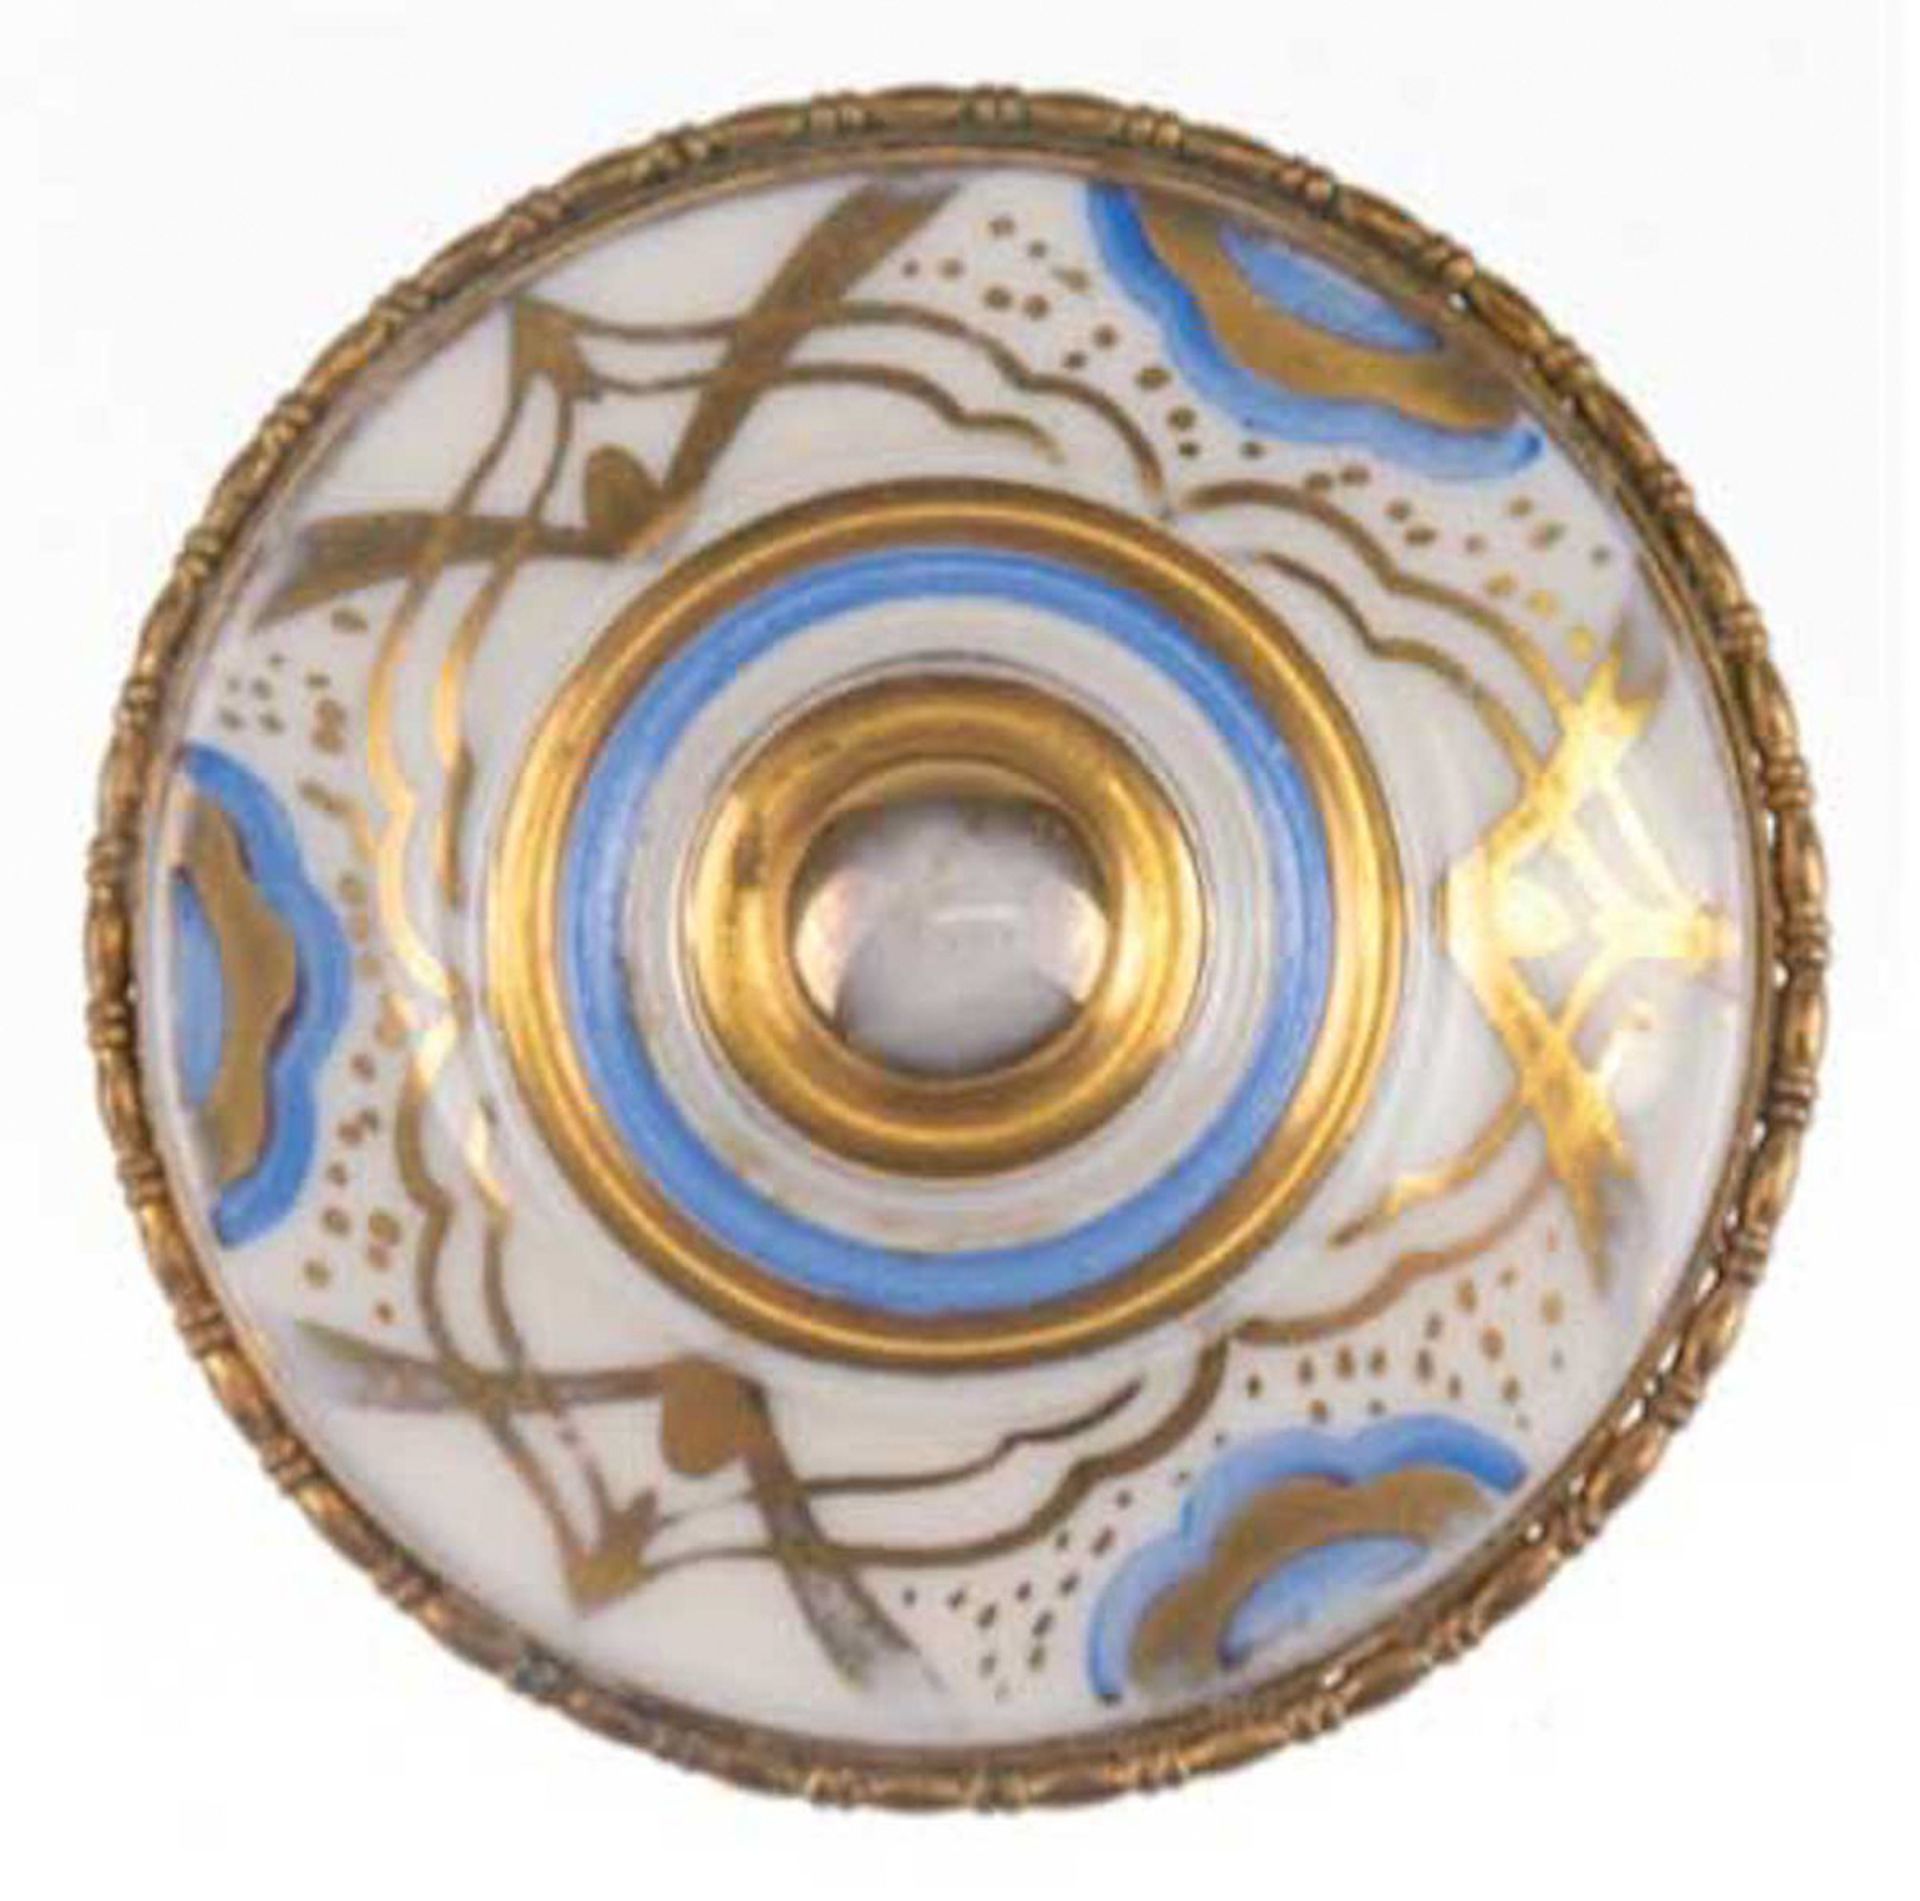 Brosche, Rosenthal-Porzellan, vergoldet, Durchmesser 4,5 cm